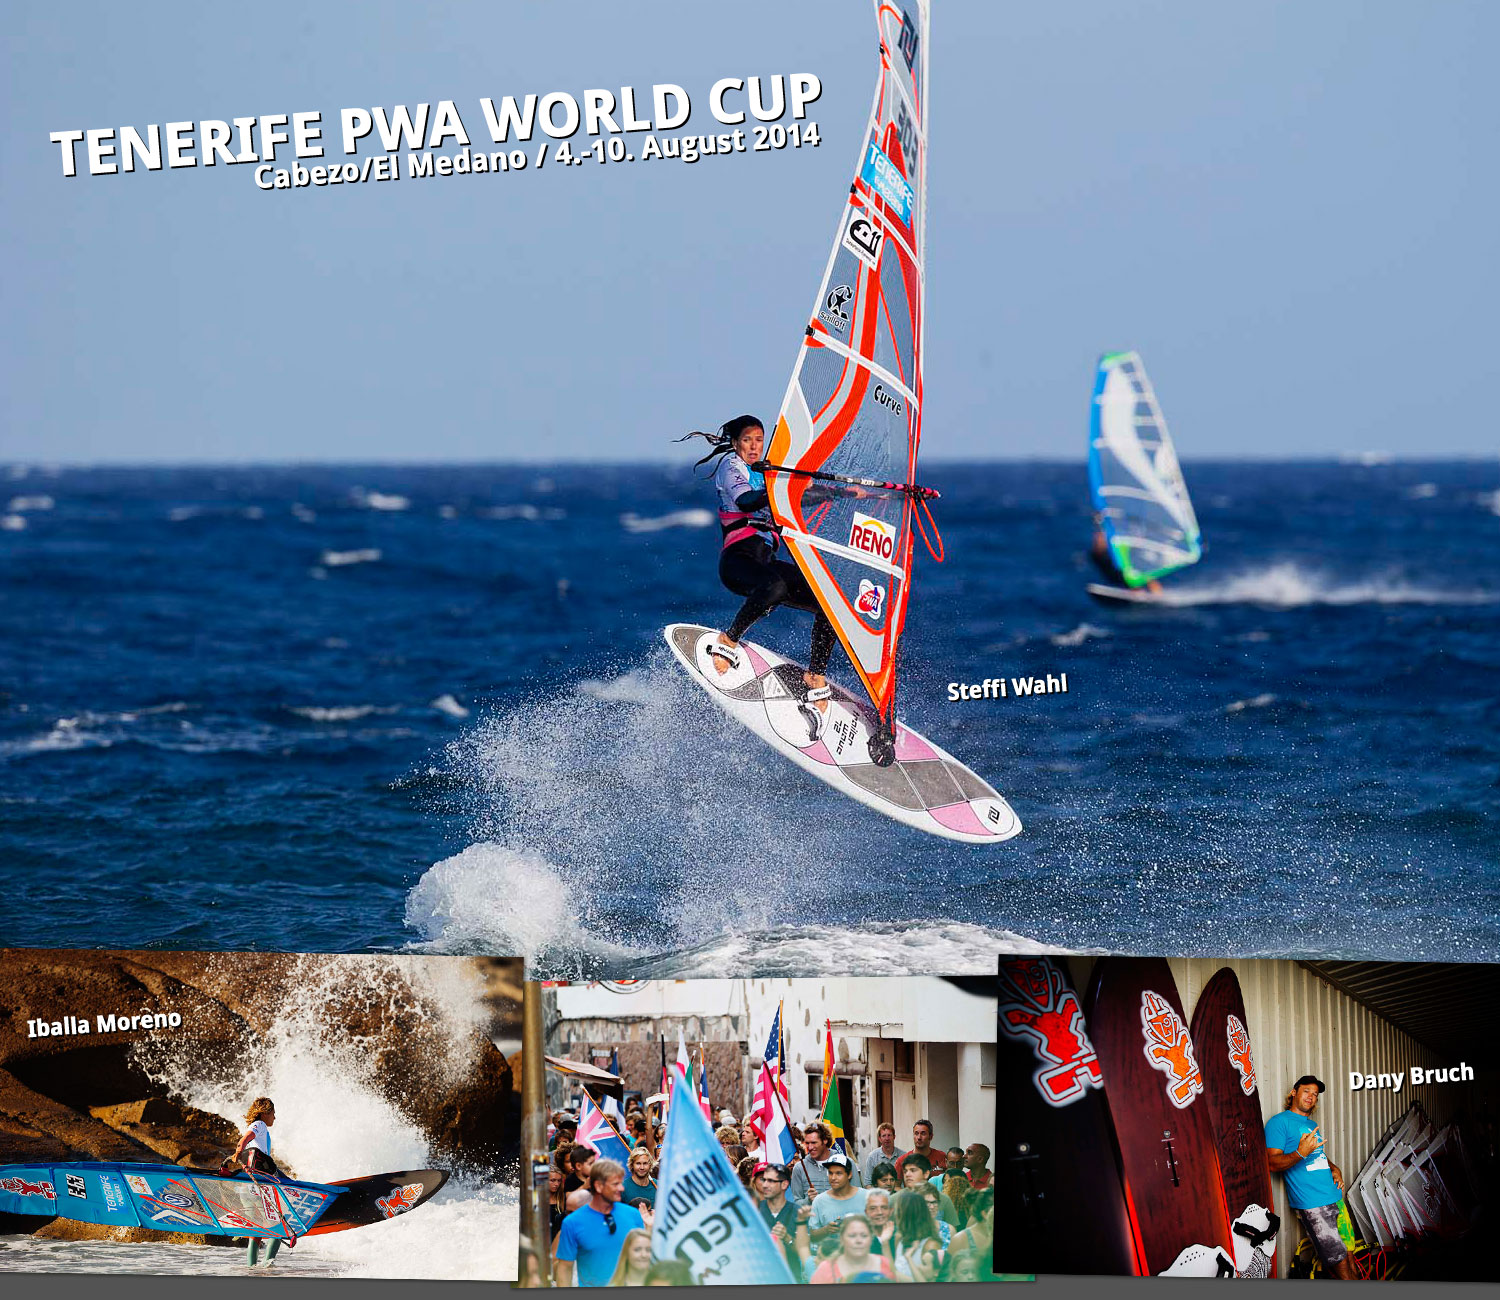 PWA Tenerife World Cup